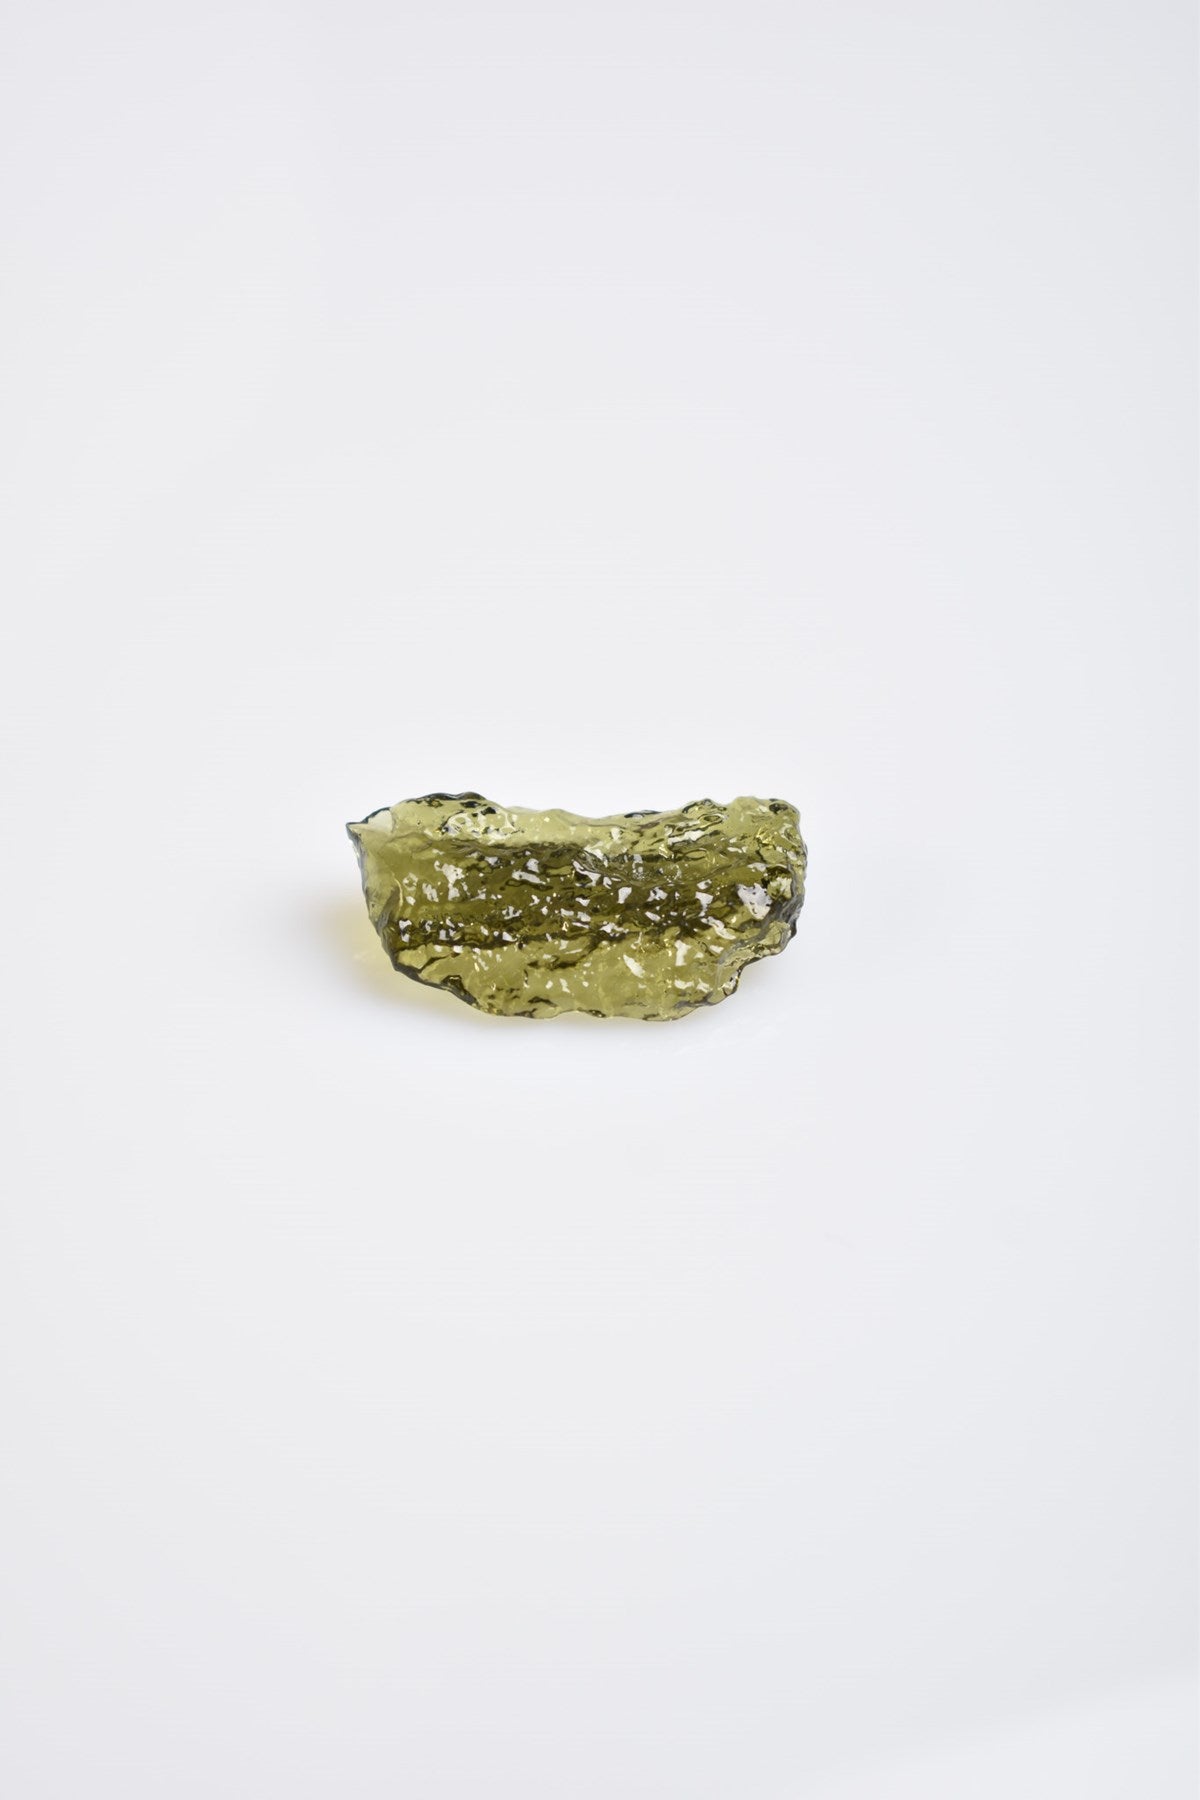 Moldavite Natural Gemstone Piece 20ct